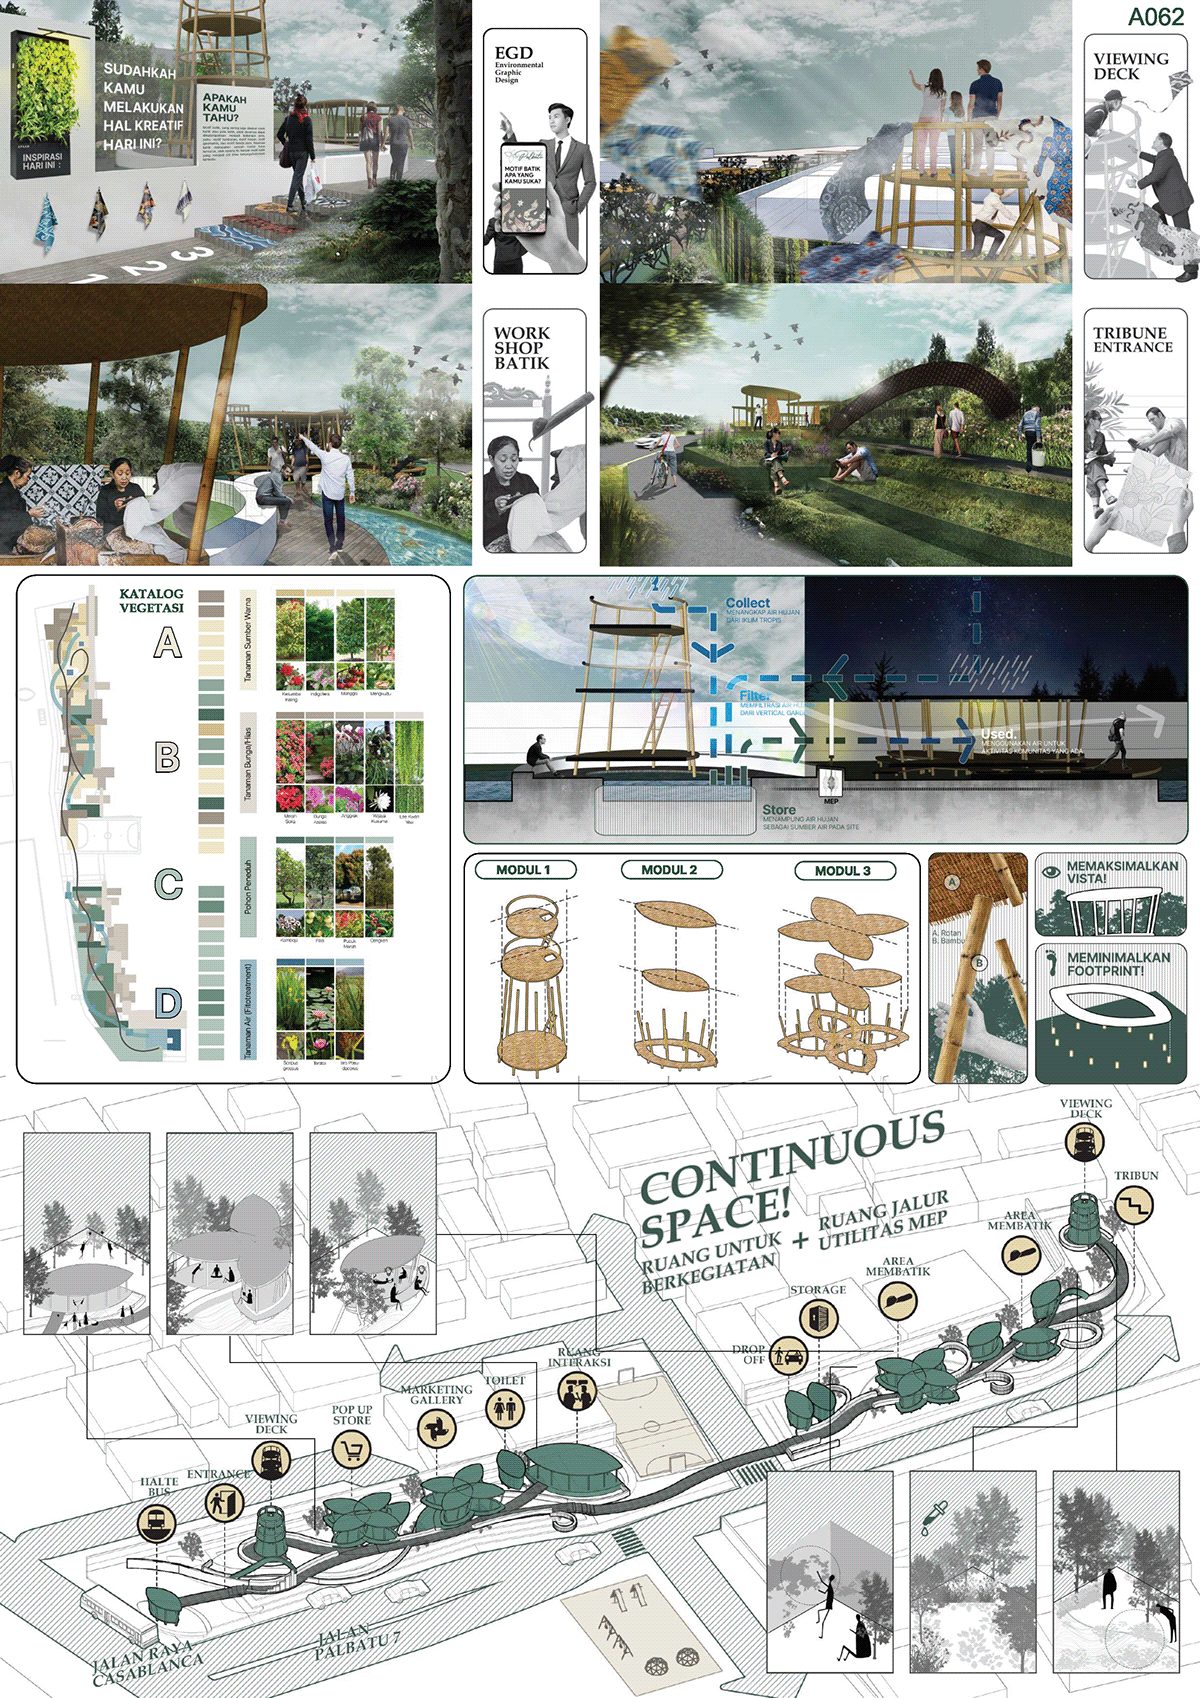 architectural design architecture batik Competition gallery jakarta Landscape Landscape Design permaculture public space